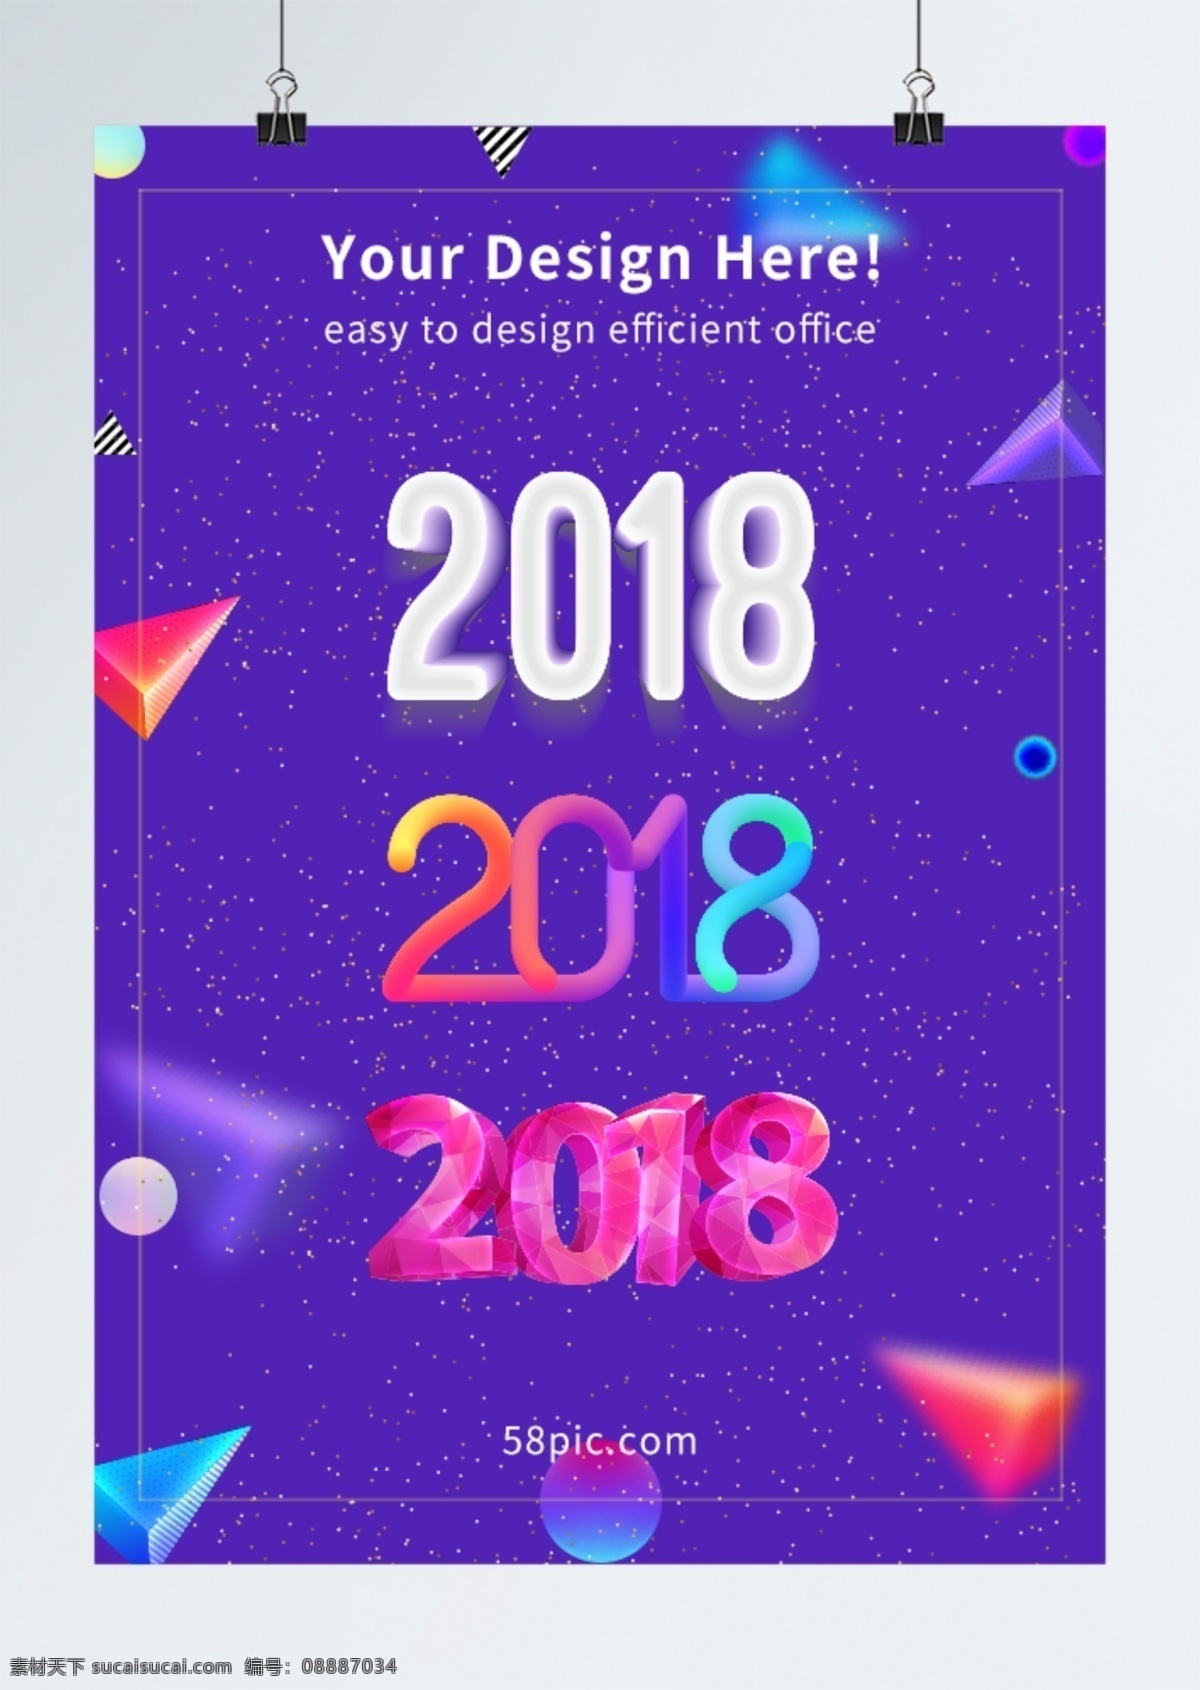 2018 字体 c4d 风格 设计素材 大庆 高端 节日素材 喜庆 新年快乐 炫酷